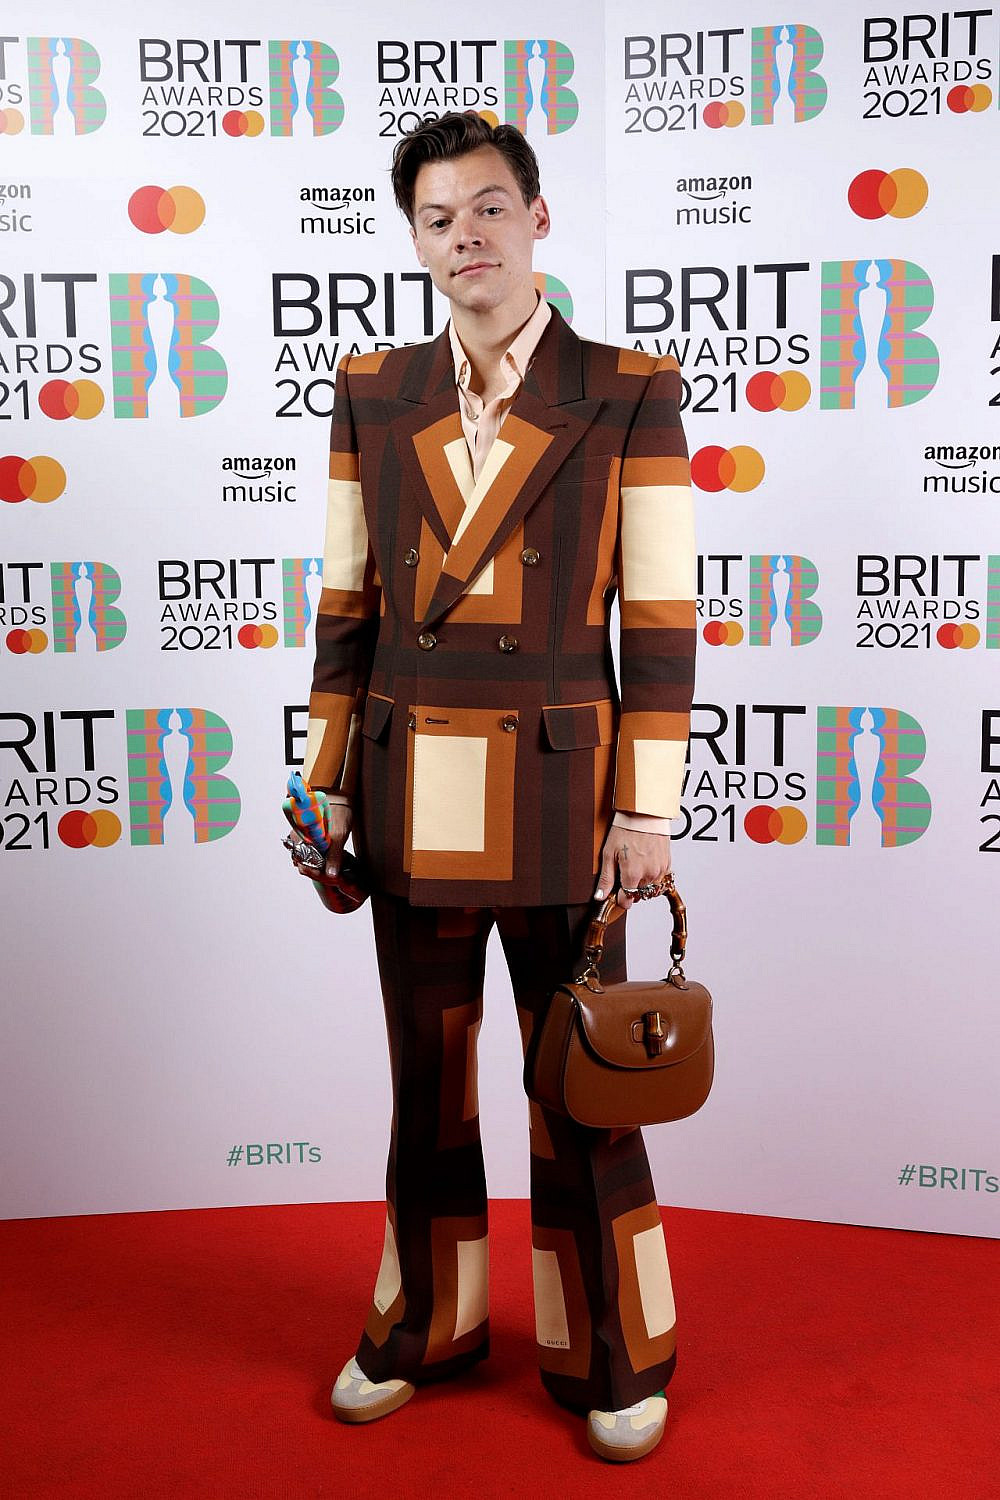 הארי סטיילס בטקס פרסי הבריט | צילום: JMEnternational/JMEnternational for BRIT Awards/Getty Images